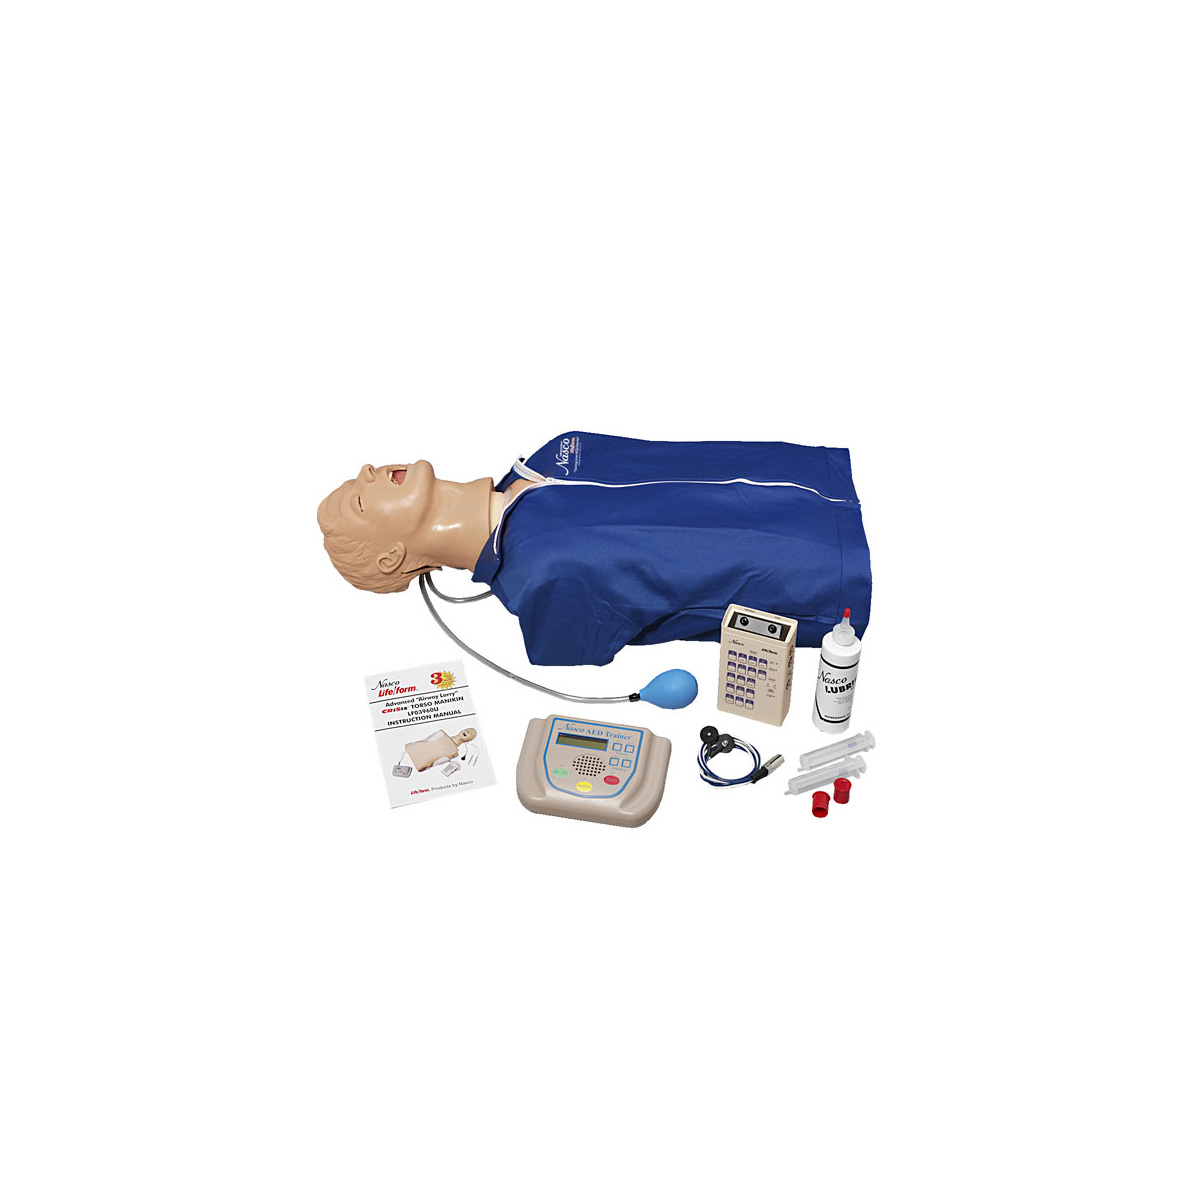 Erweiterter Airway Larry Torso mit Defibrillationsfunktion, EKG-Simulation und AED-Training, Bestellnummer 1018868, LF03969U, Nasco Life/form